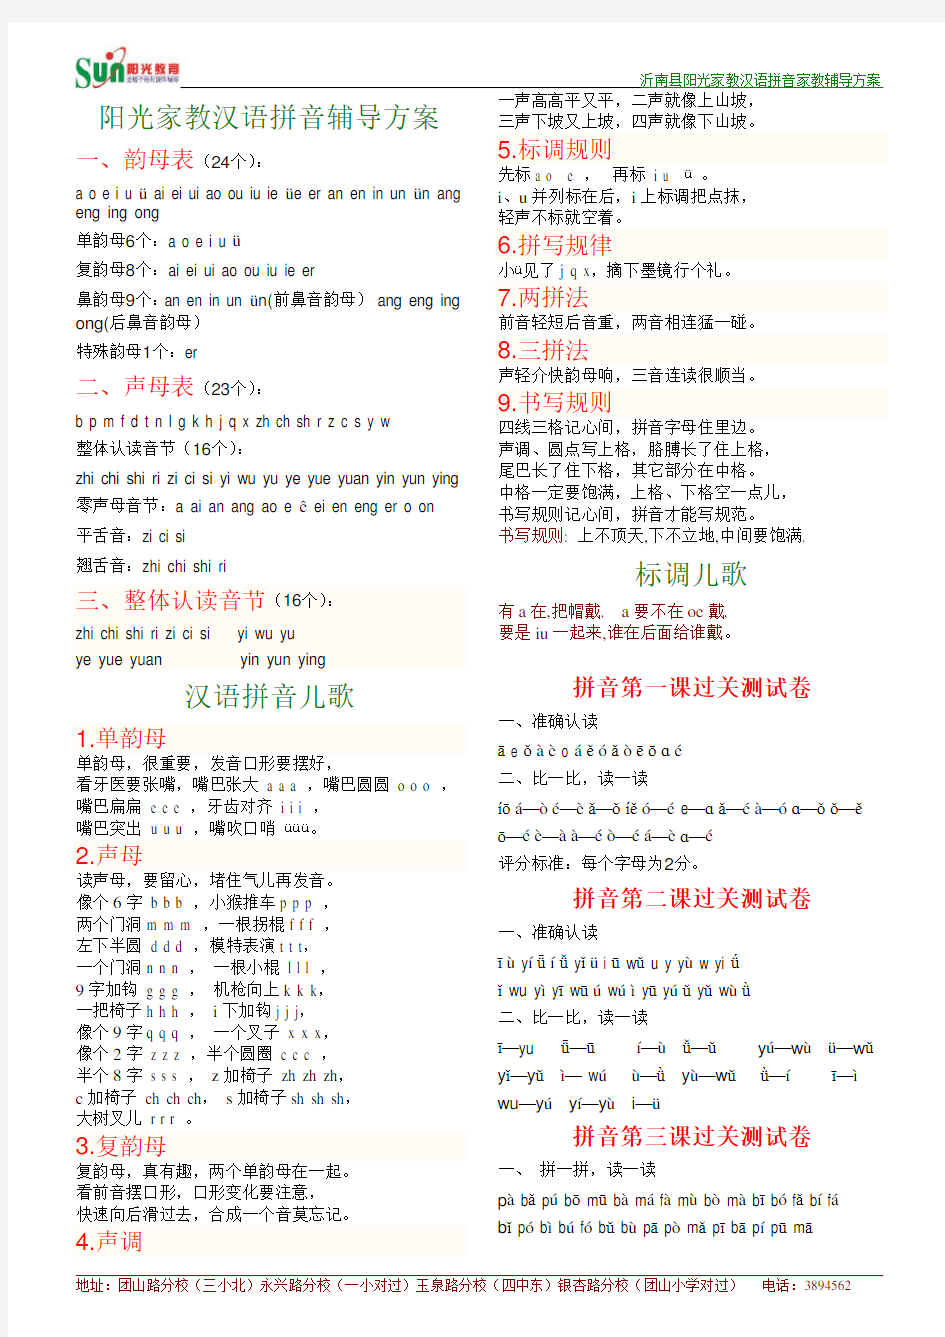 汉语拼音辅导方案